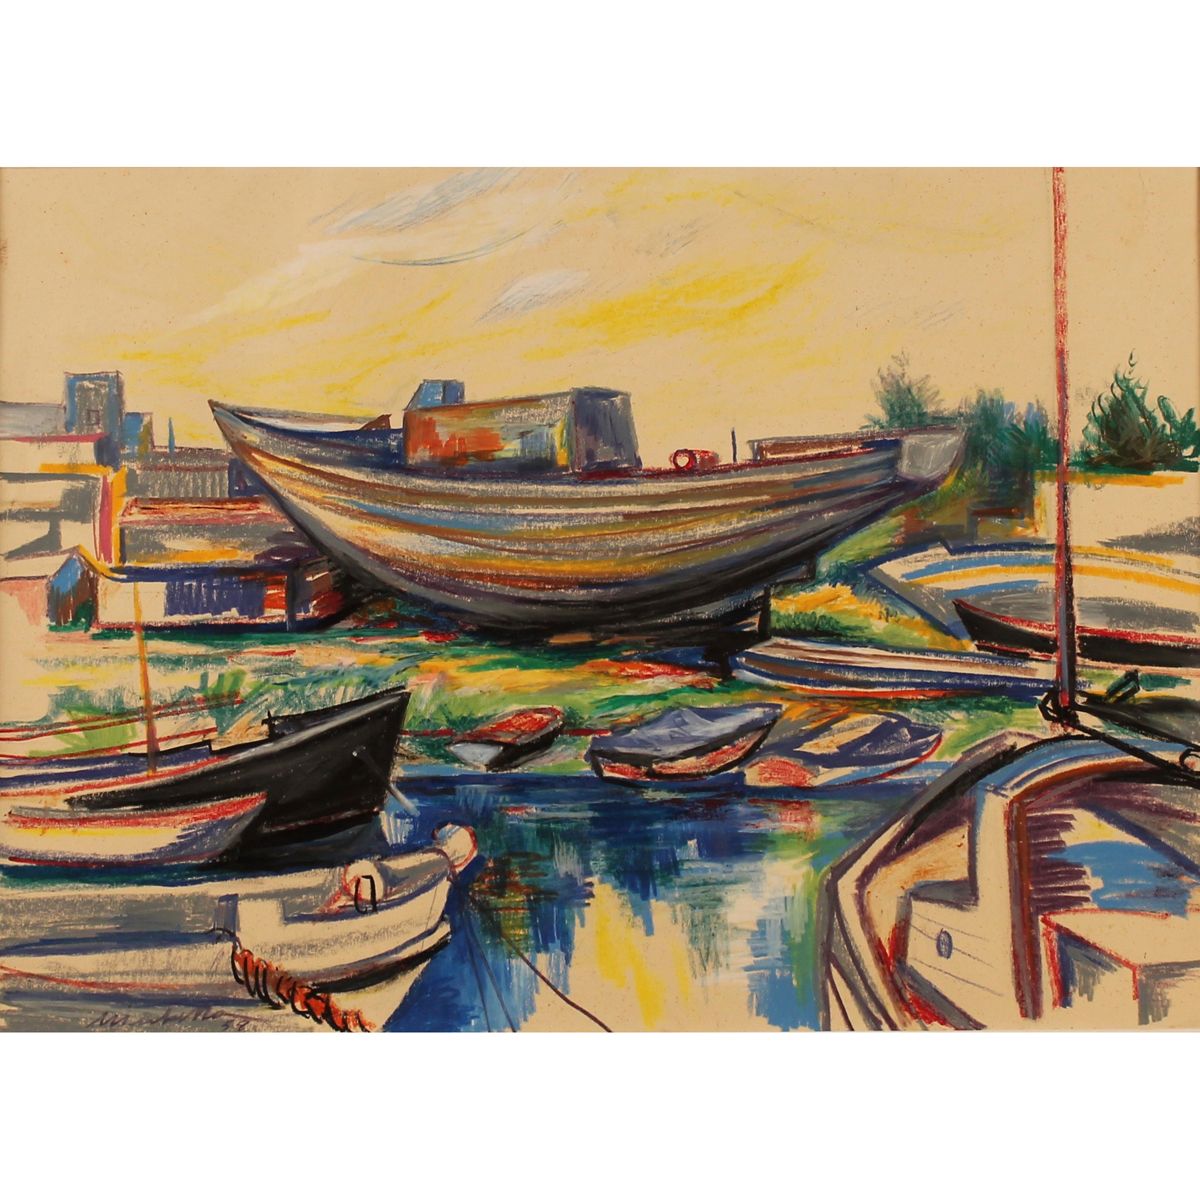 SARO MIRABELLA (1914/1972) "Barche a secco" - "Dry boats" Pastel sobre papel. Co&hellip;